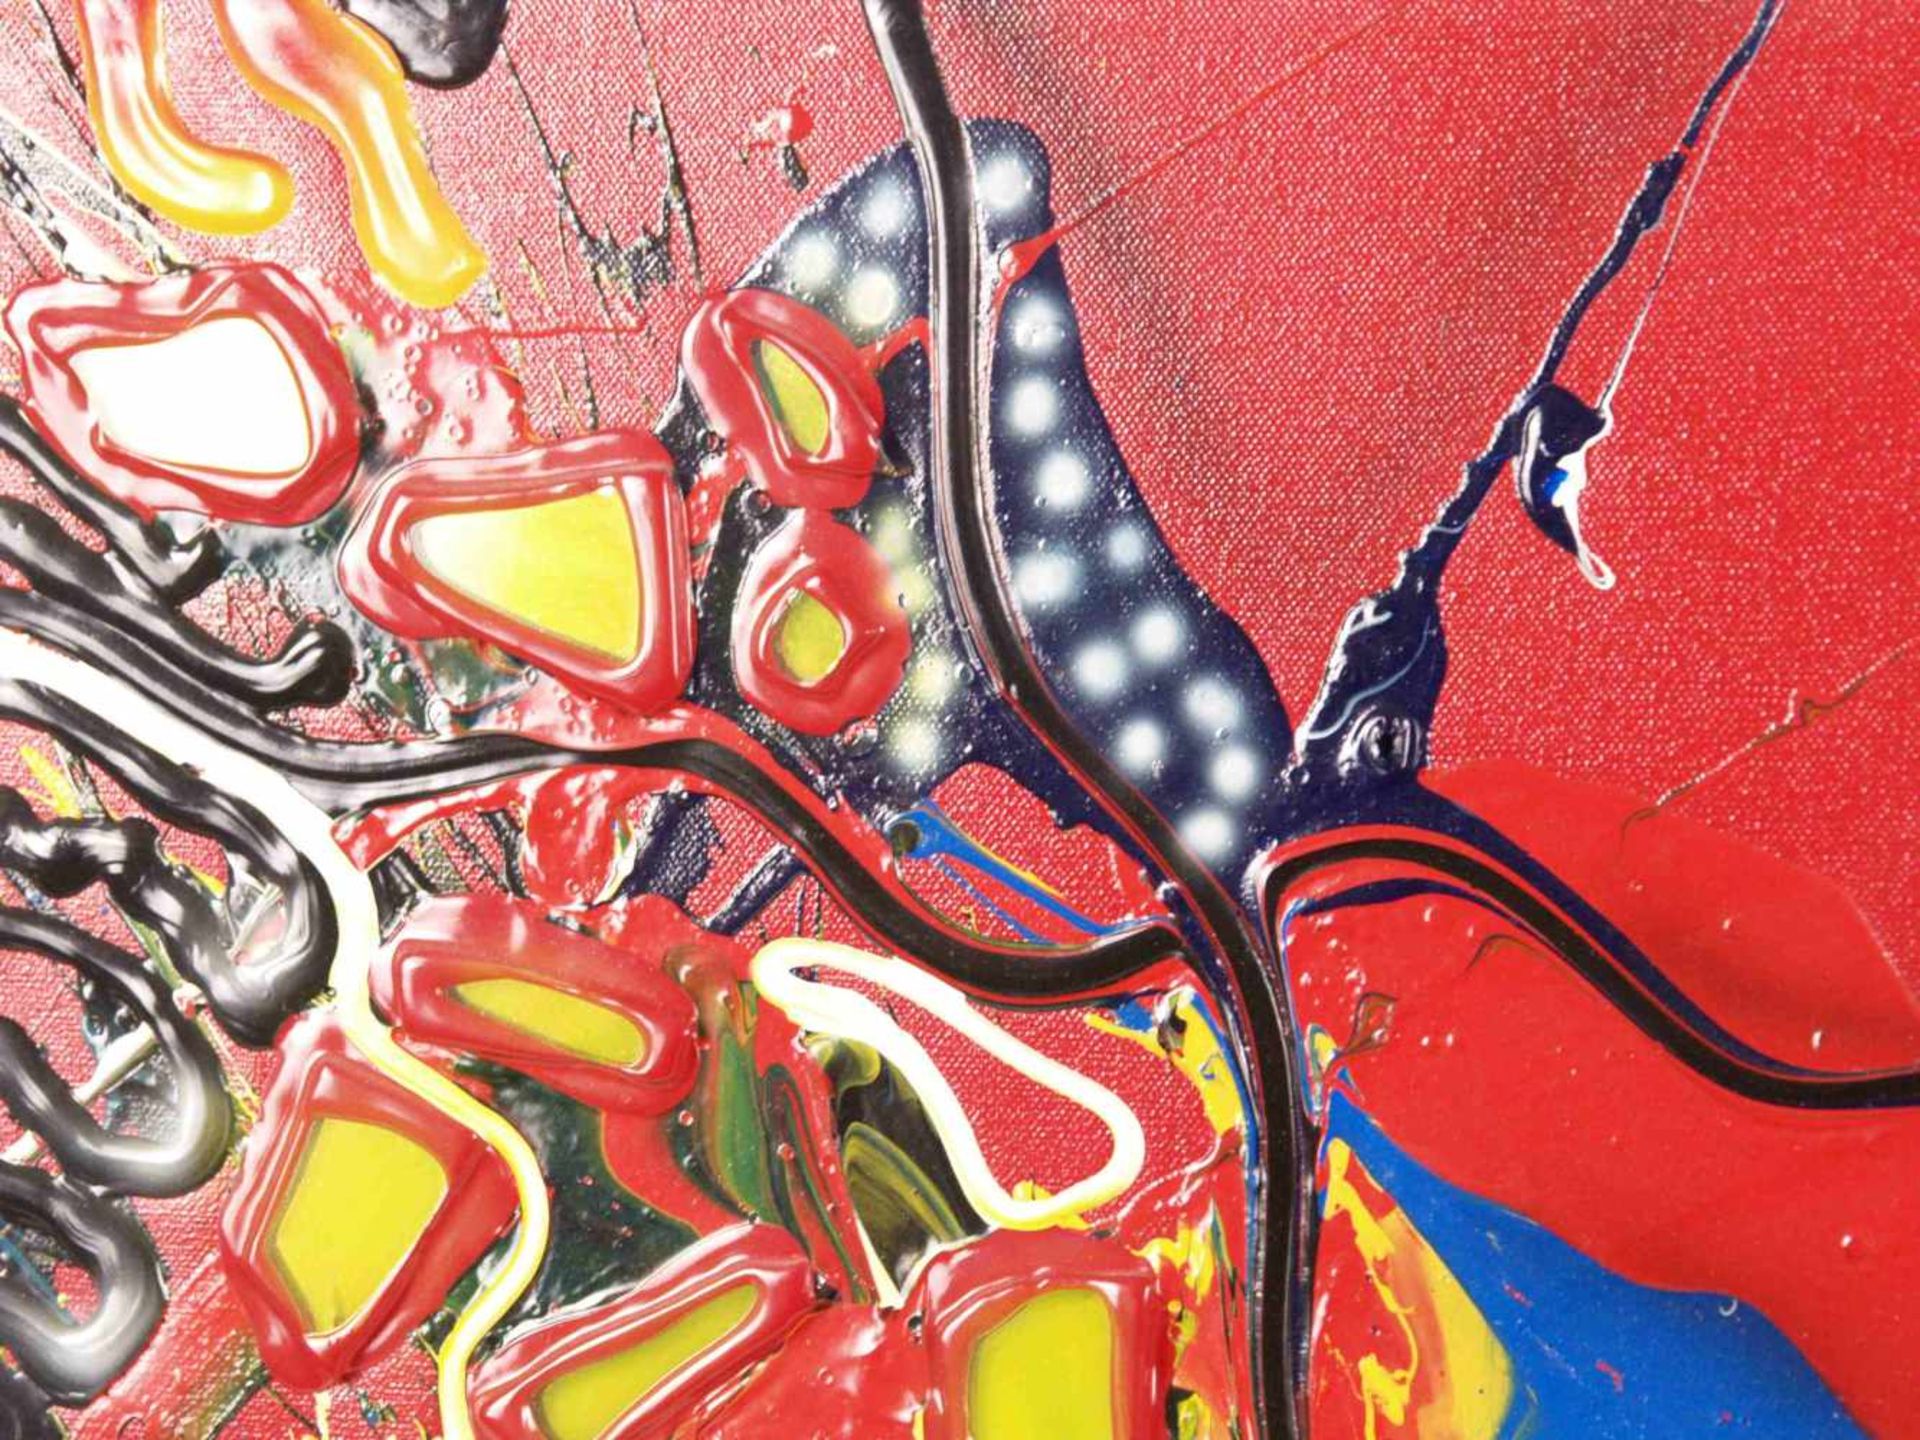 Micmac (Bea Schröder, zeitgenössische Künstlerin in Düsseldorf) - Abstraktion auf rotem Hintergrund, - Bild 2 aus 5